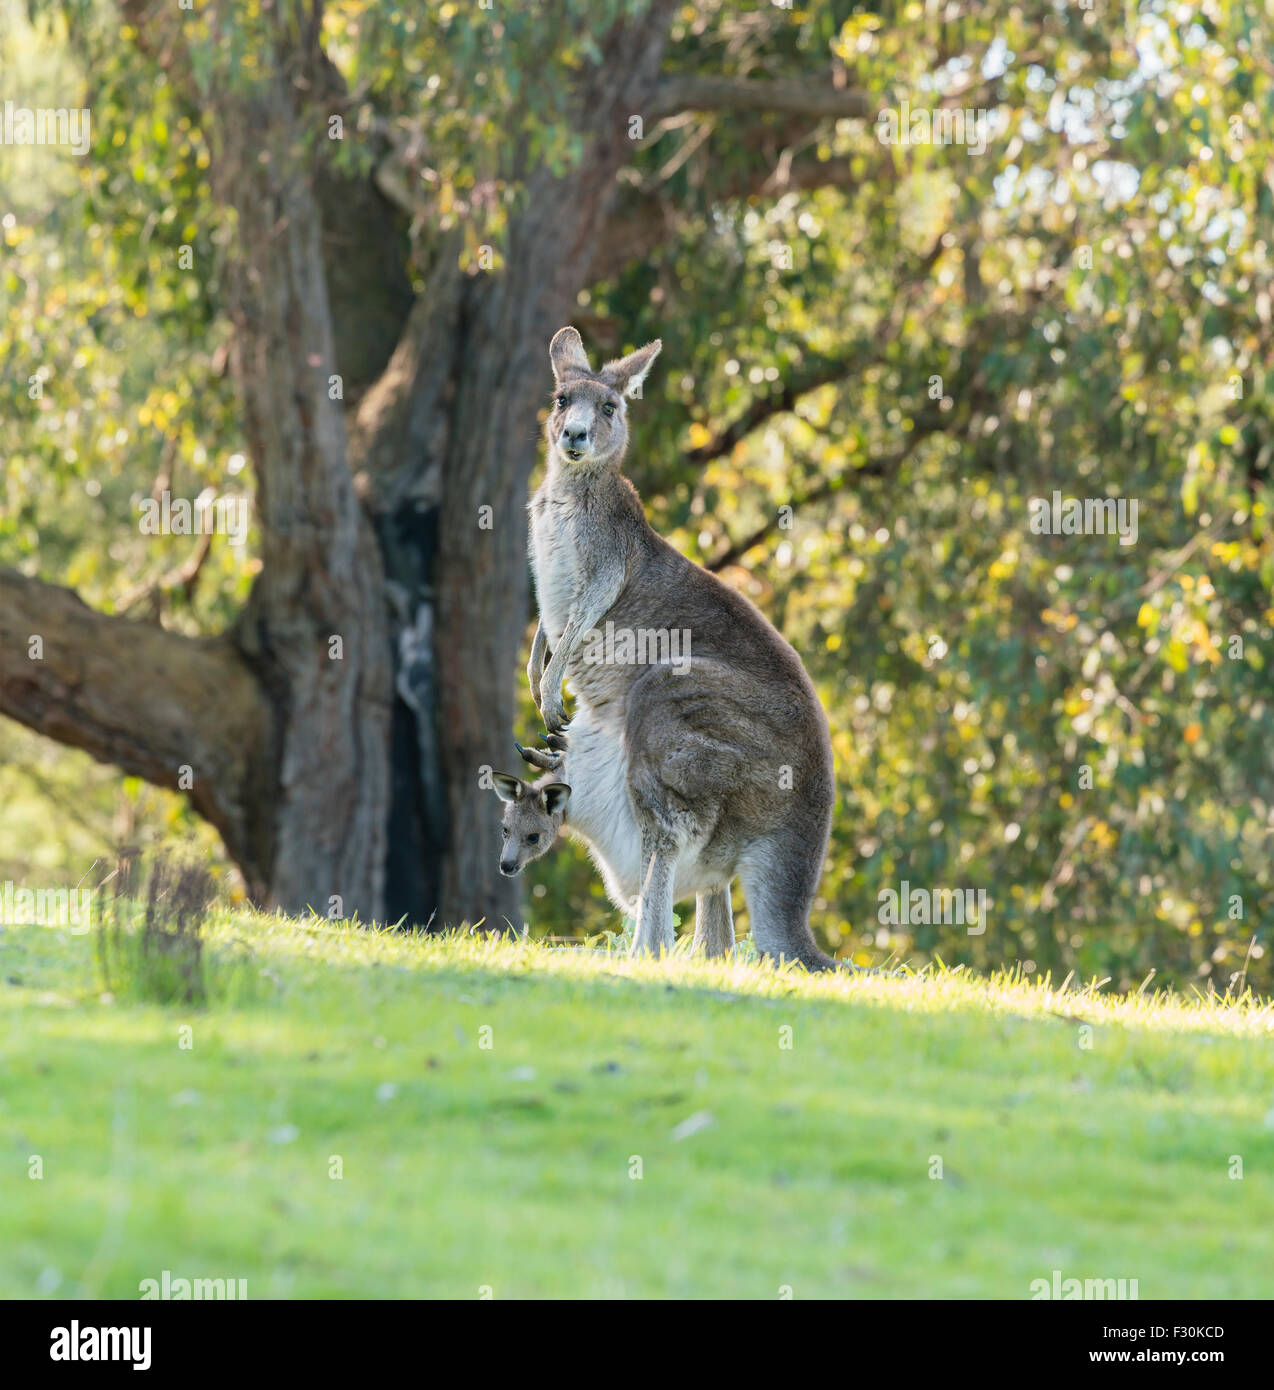 Kangaroo mother with baby joey Stock Photo